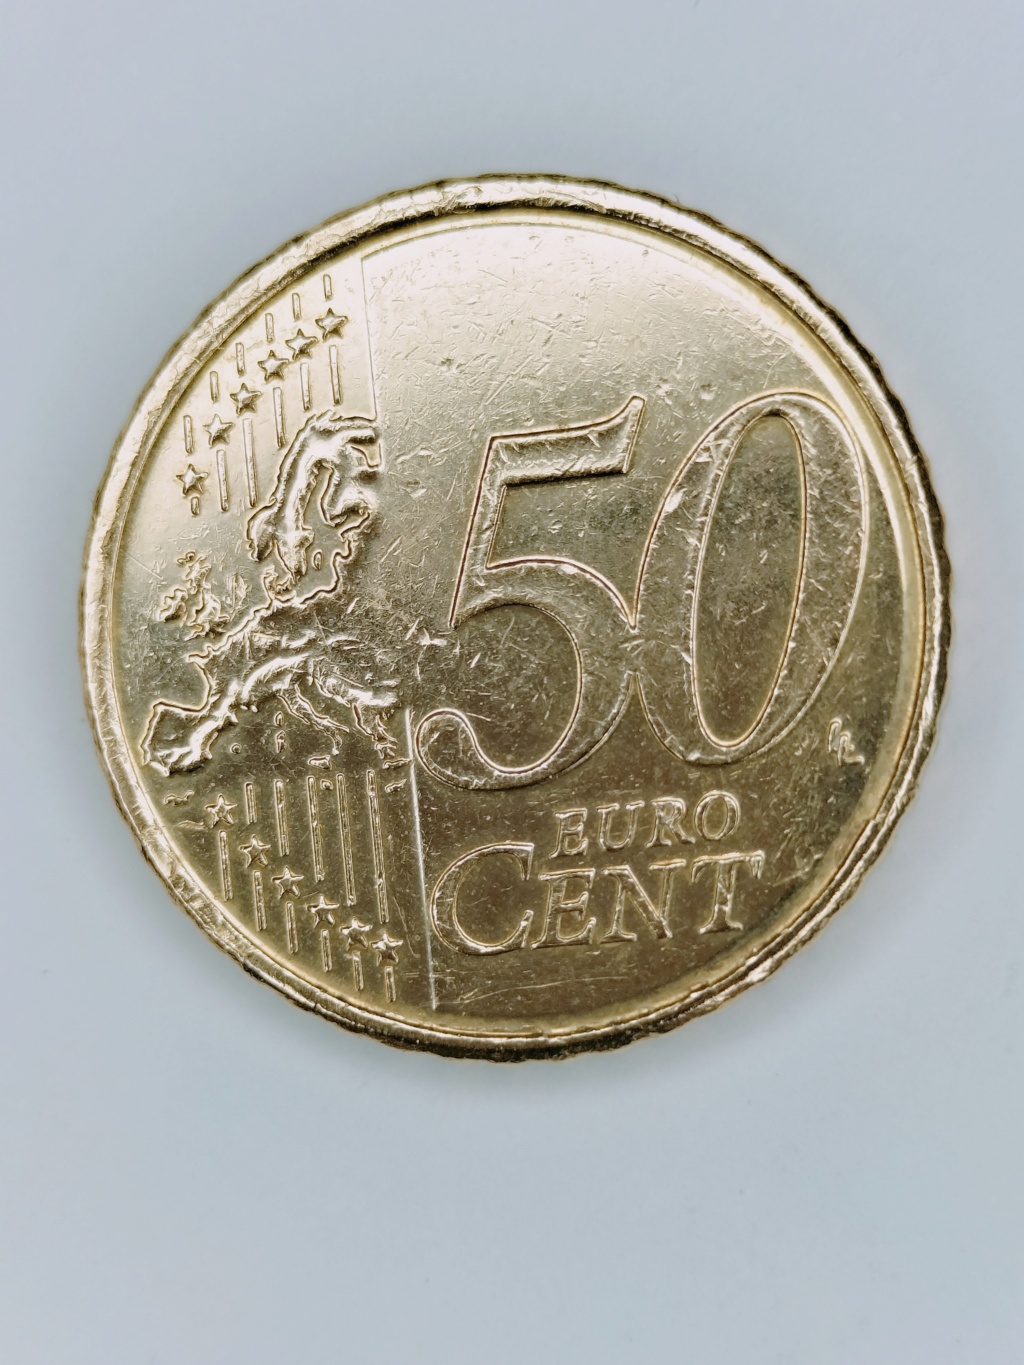 50 centimos Euro - Belgica 2015 - cuño laminado en todo el anillo Img20120